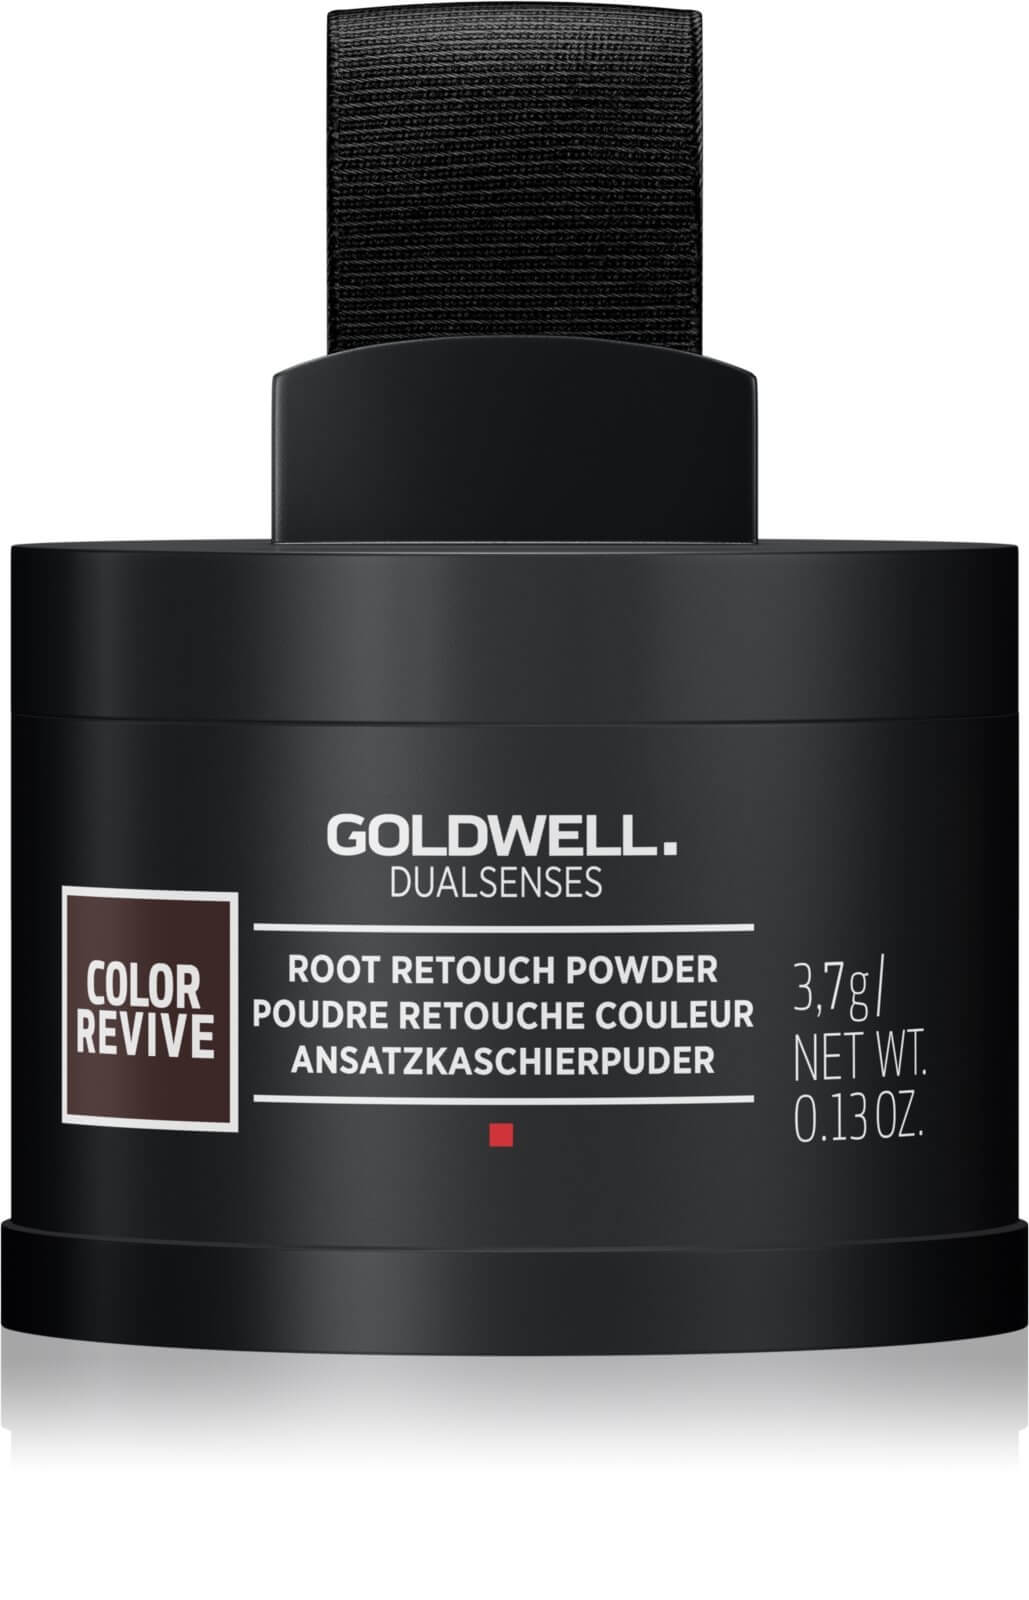 Goldwell Pudr pro zakrytí odrostů Dualsenses Color Revive (Root Retouche Powder) 3,7 g Copper Red